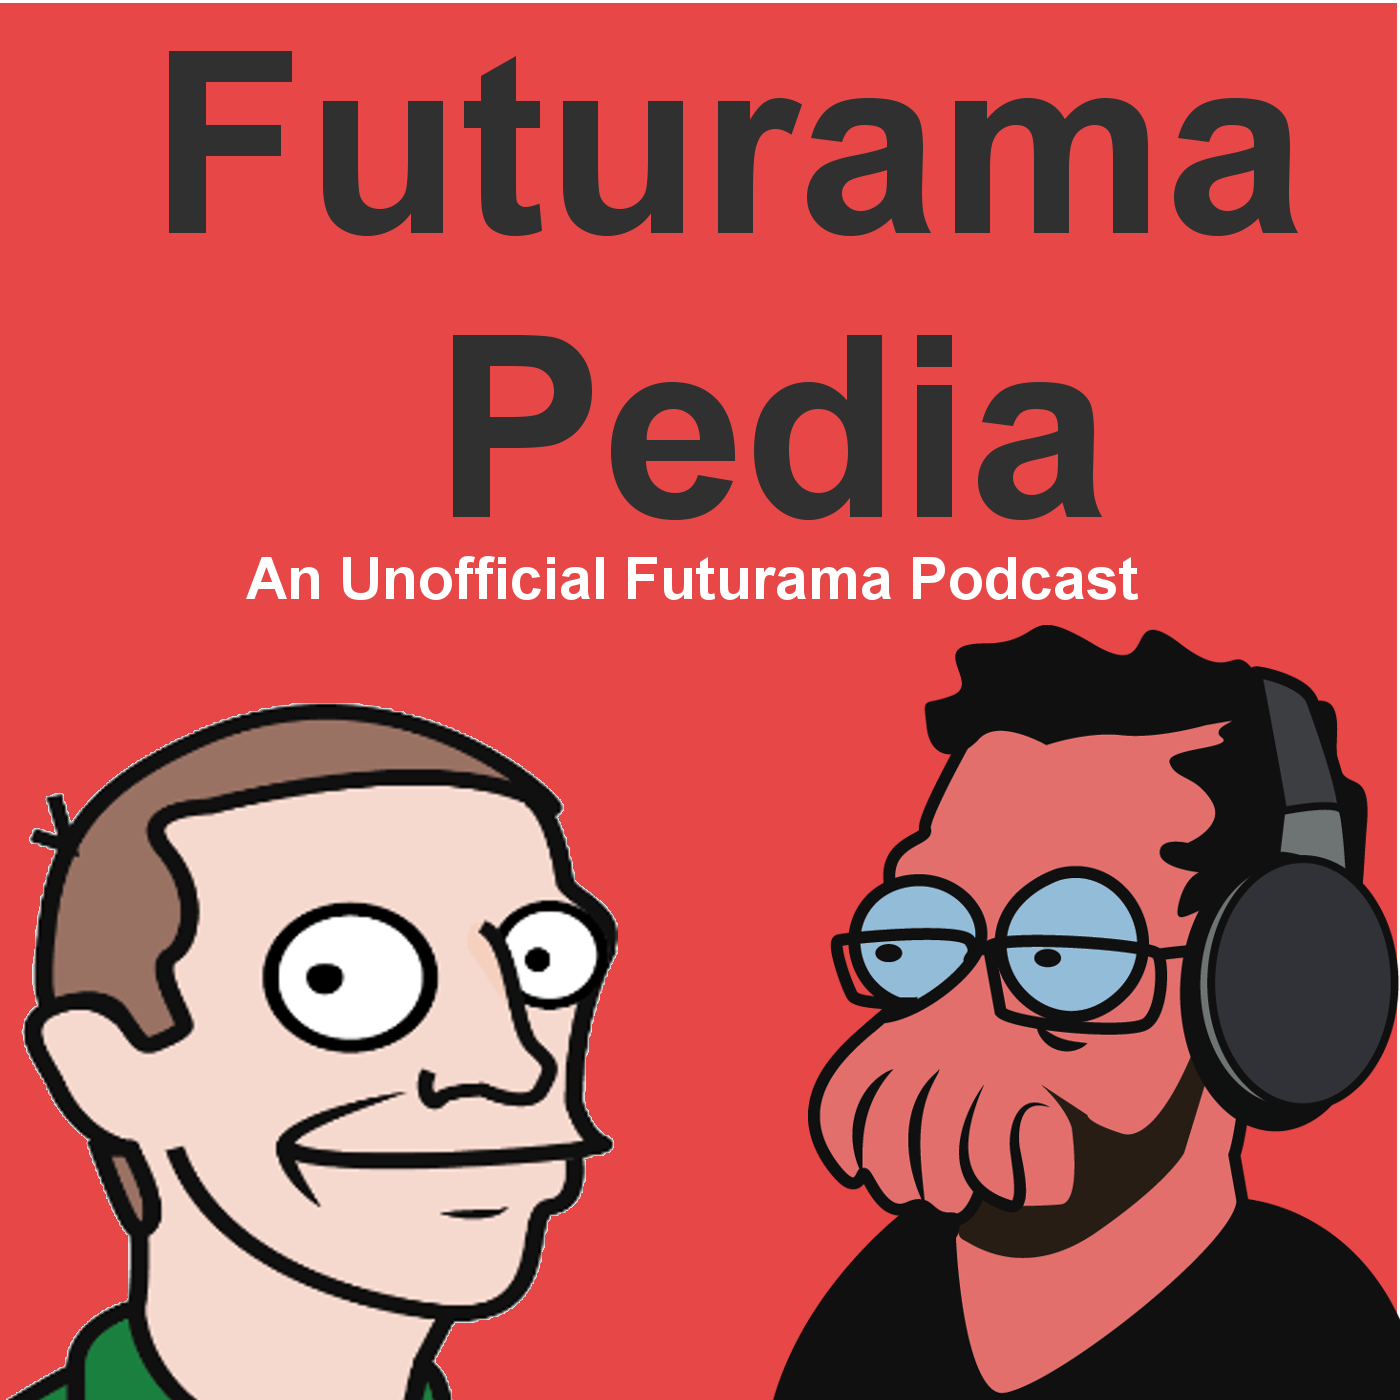 Futurama Pedia podcast logo